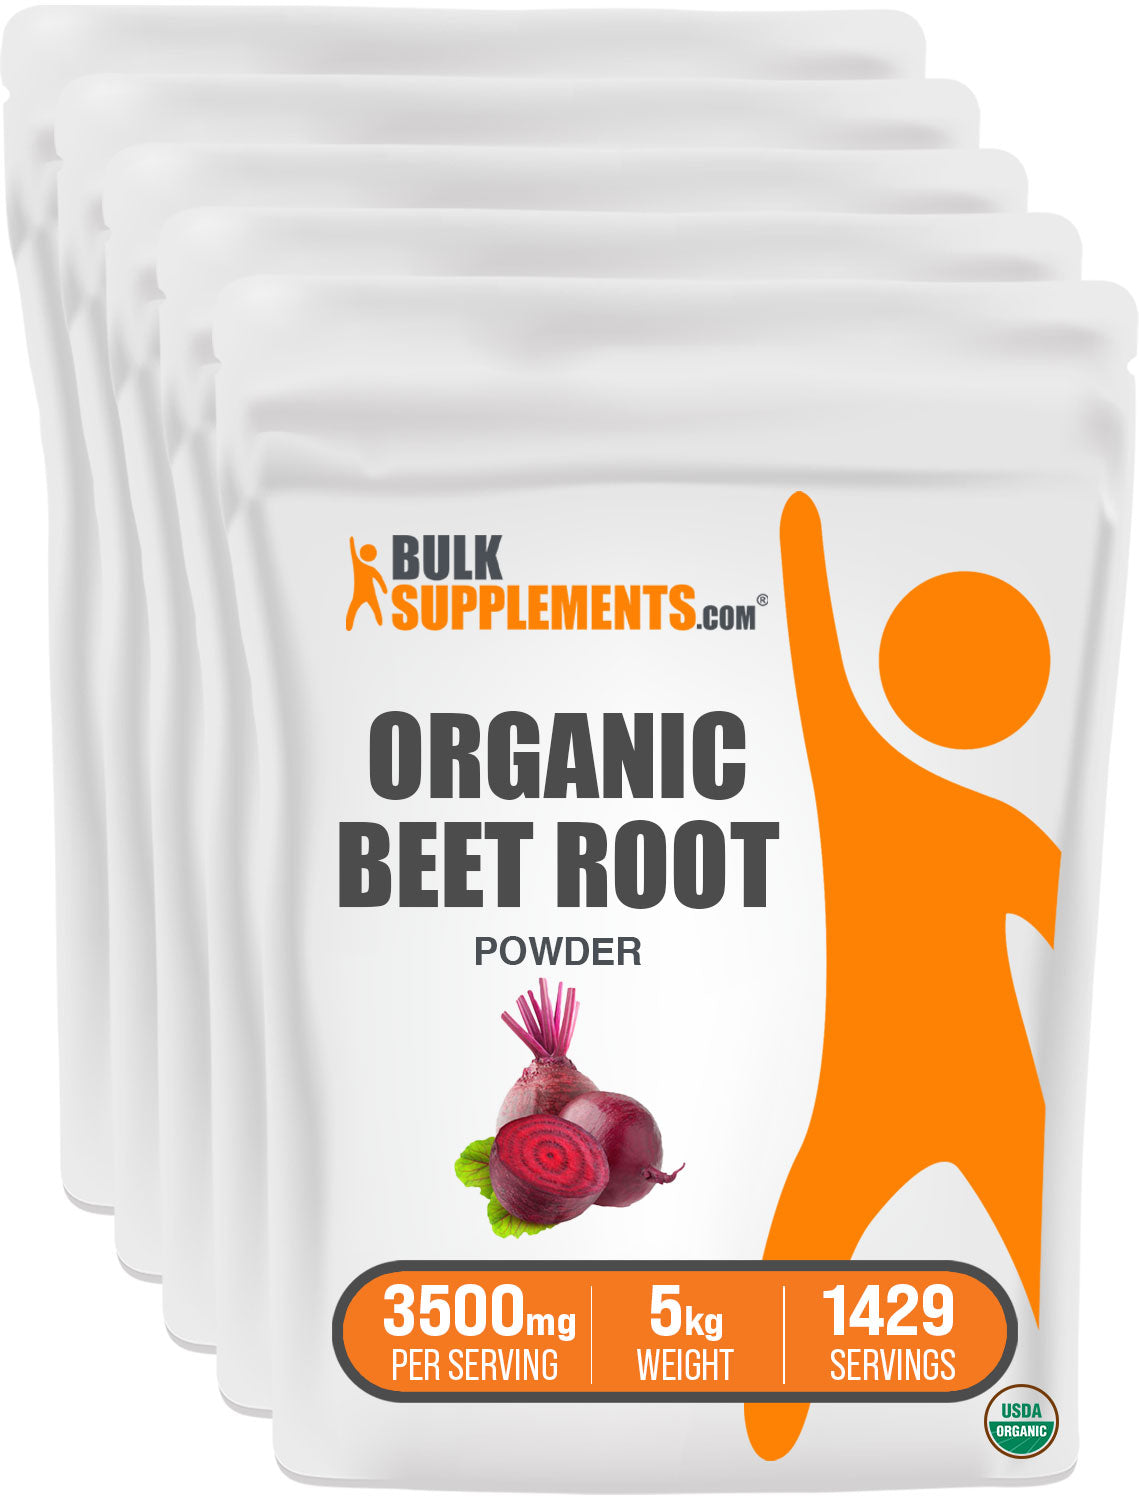 Bulk Organic Beet Root Powder in five 1kg bags